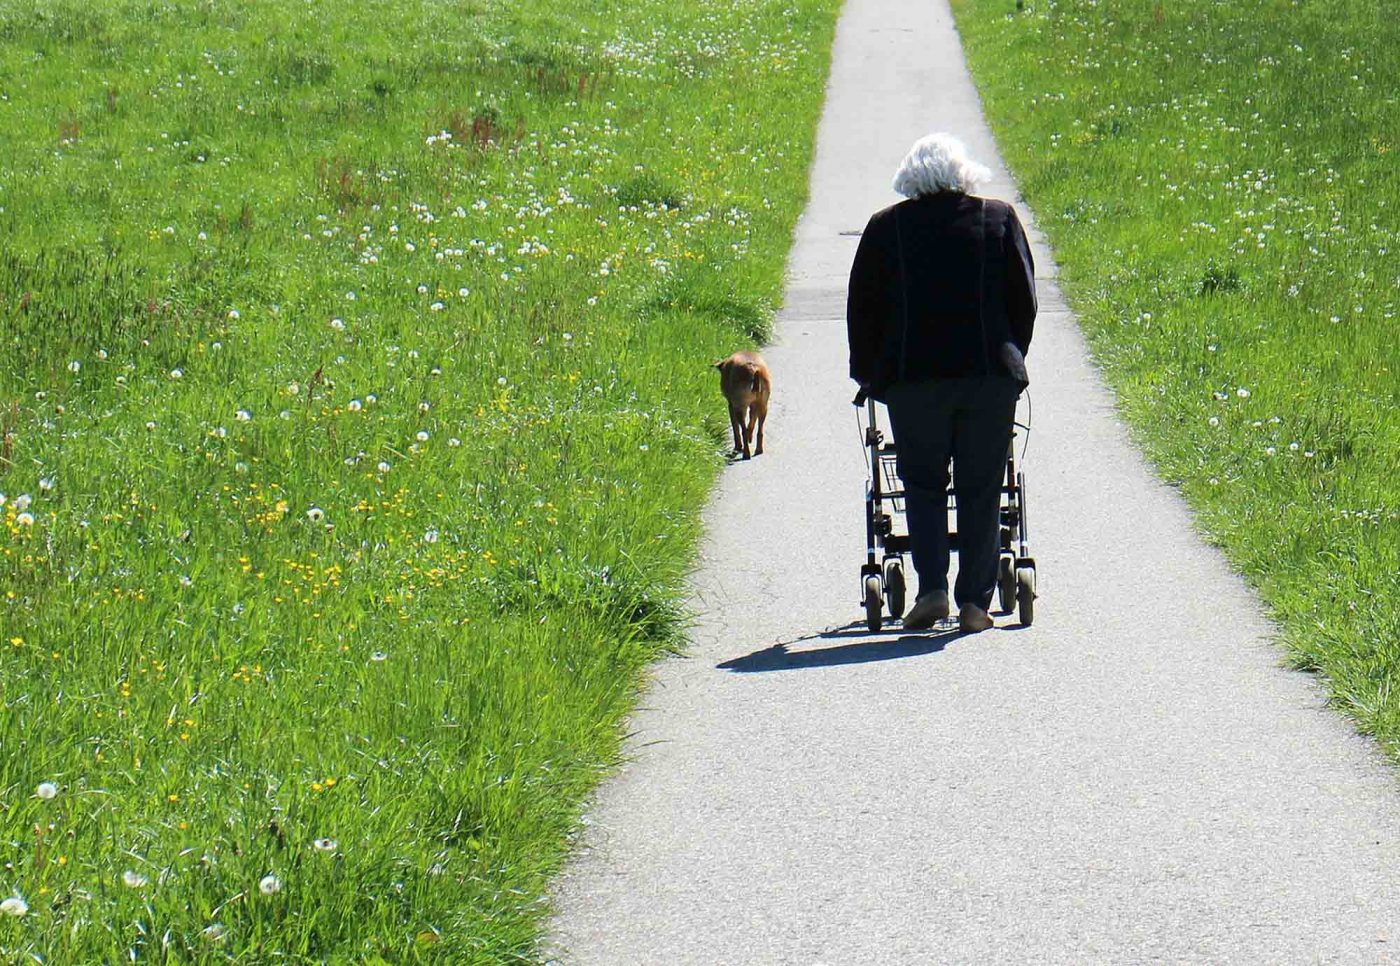 Die NGOs erhoffen sich etwa mehr Unterstützung für pflegende Angehörige und bessere Arbeitsbedingungen für das Pflegepersonal. Foto: pixabay